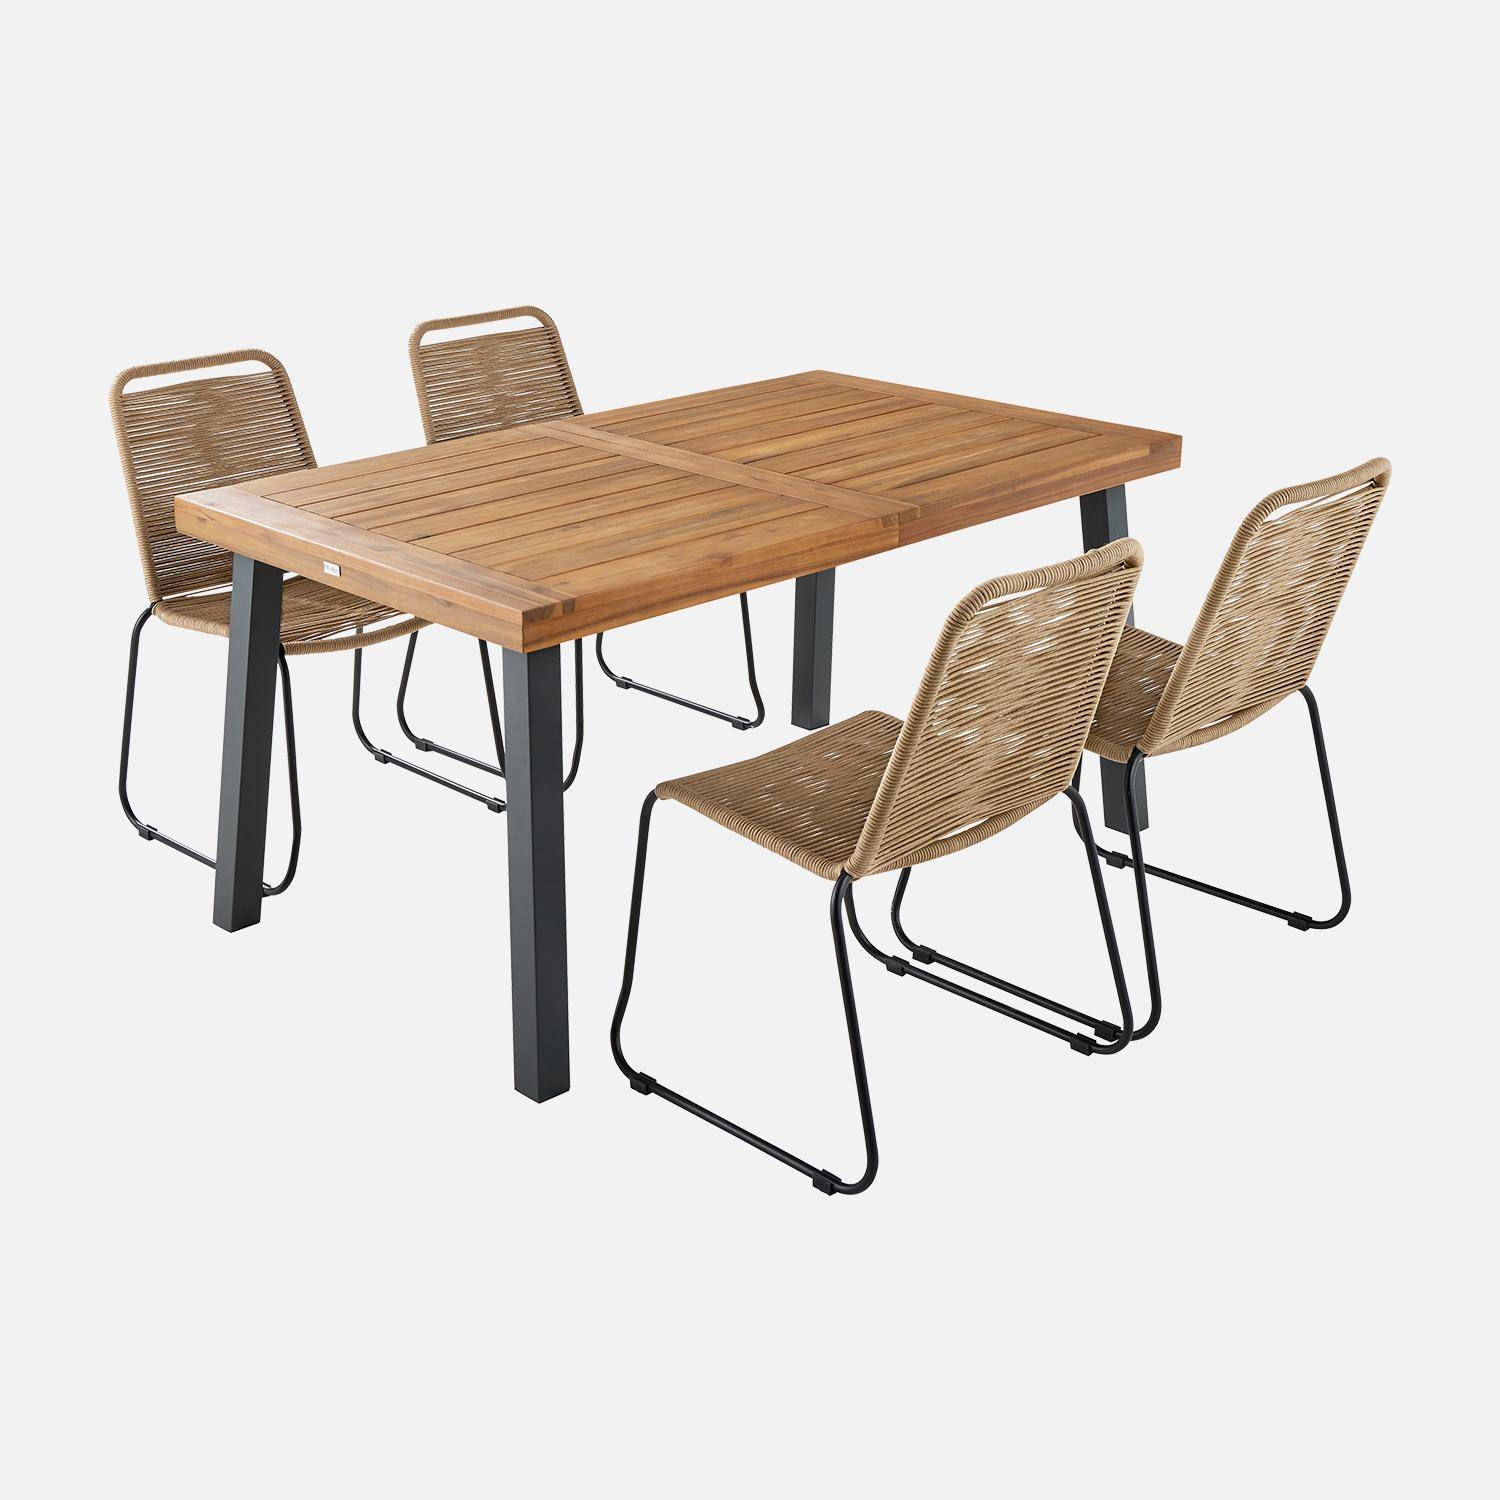 Table intérieur / extérieur Santana en bois et métal, 150cm + 4 chaises en corde BRASILIA beiges, empilables Photo3